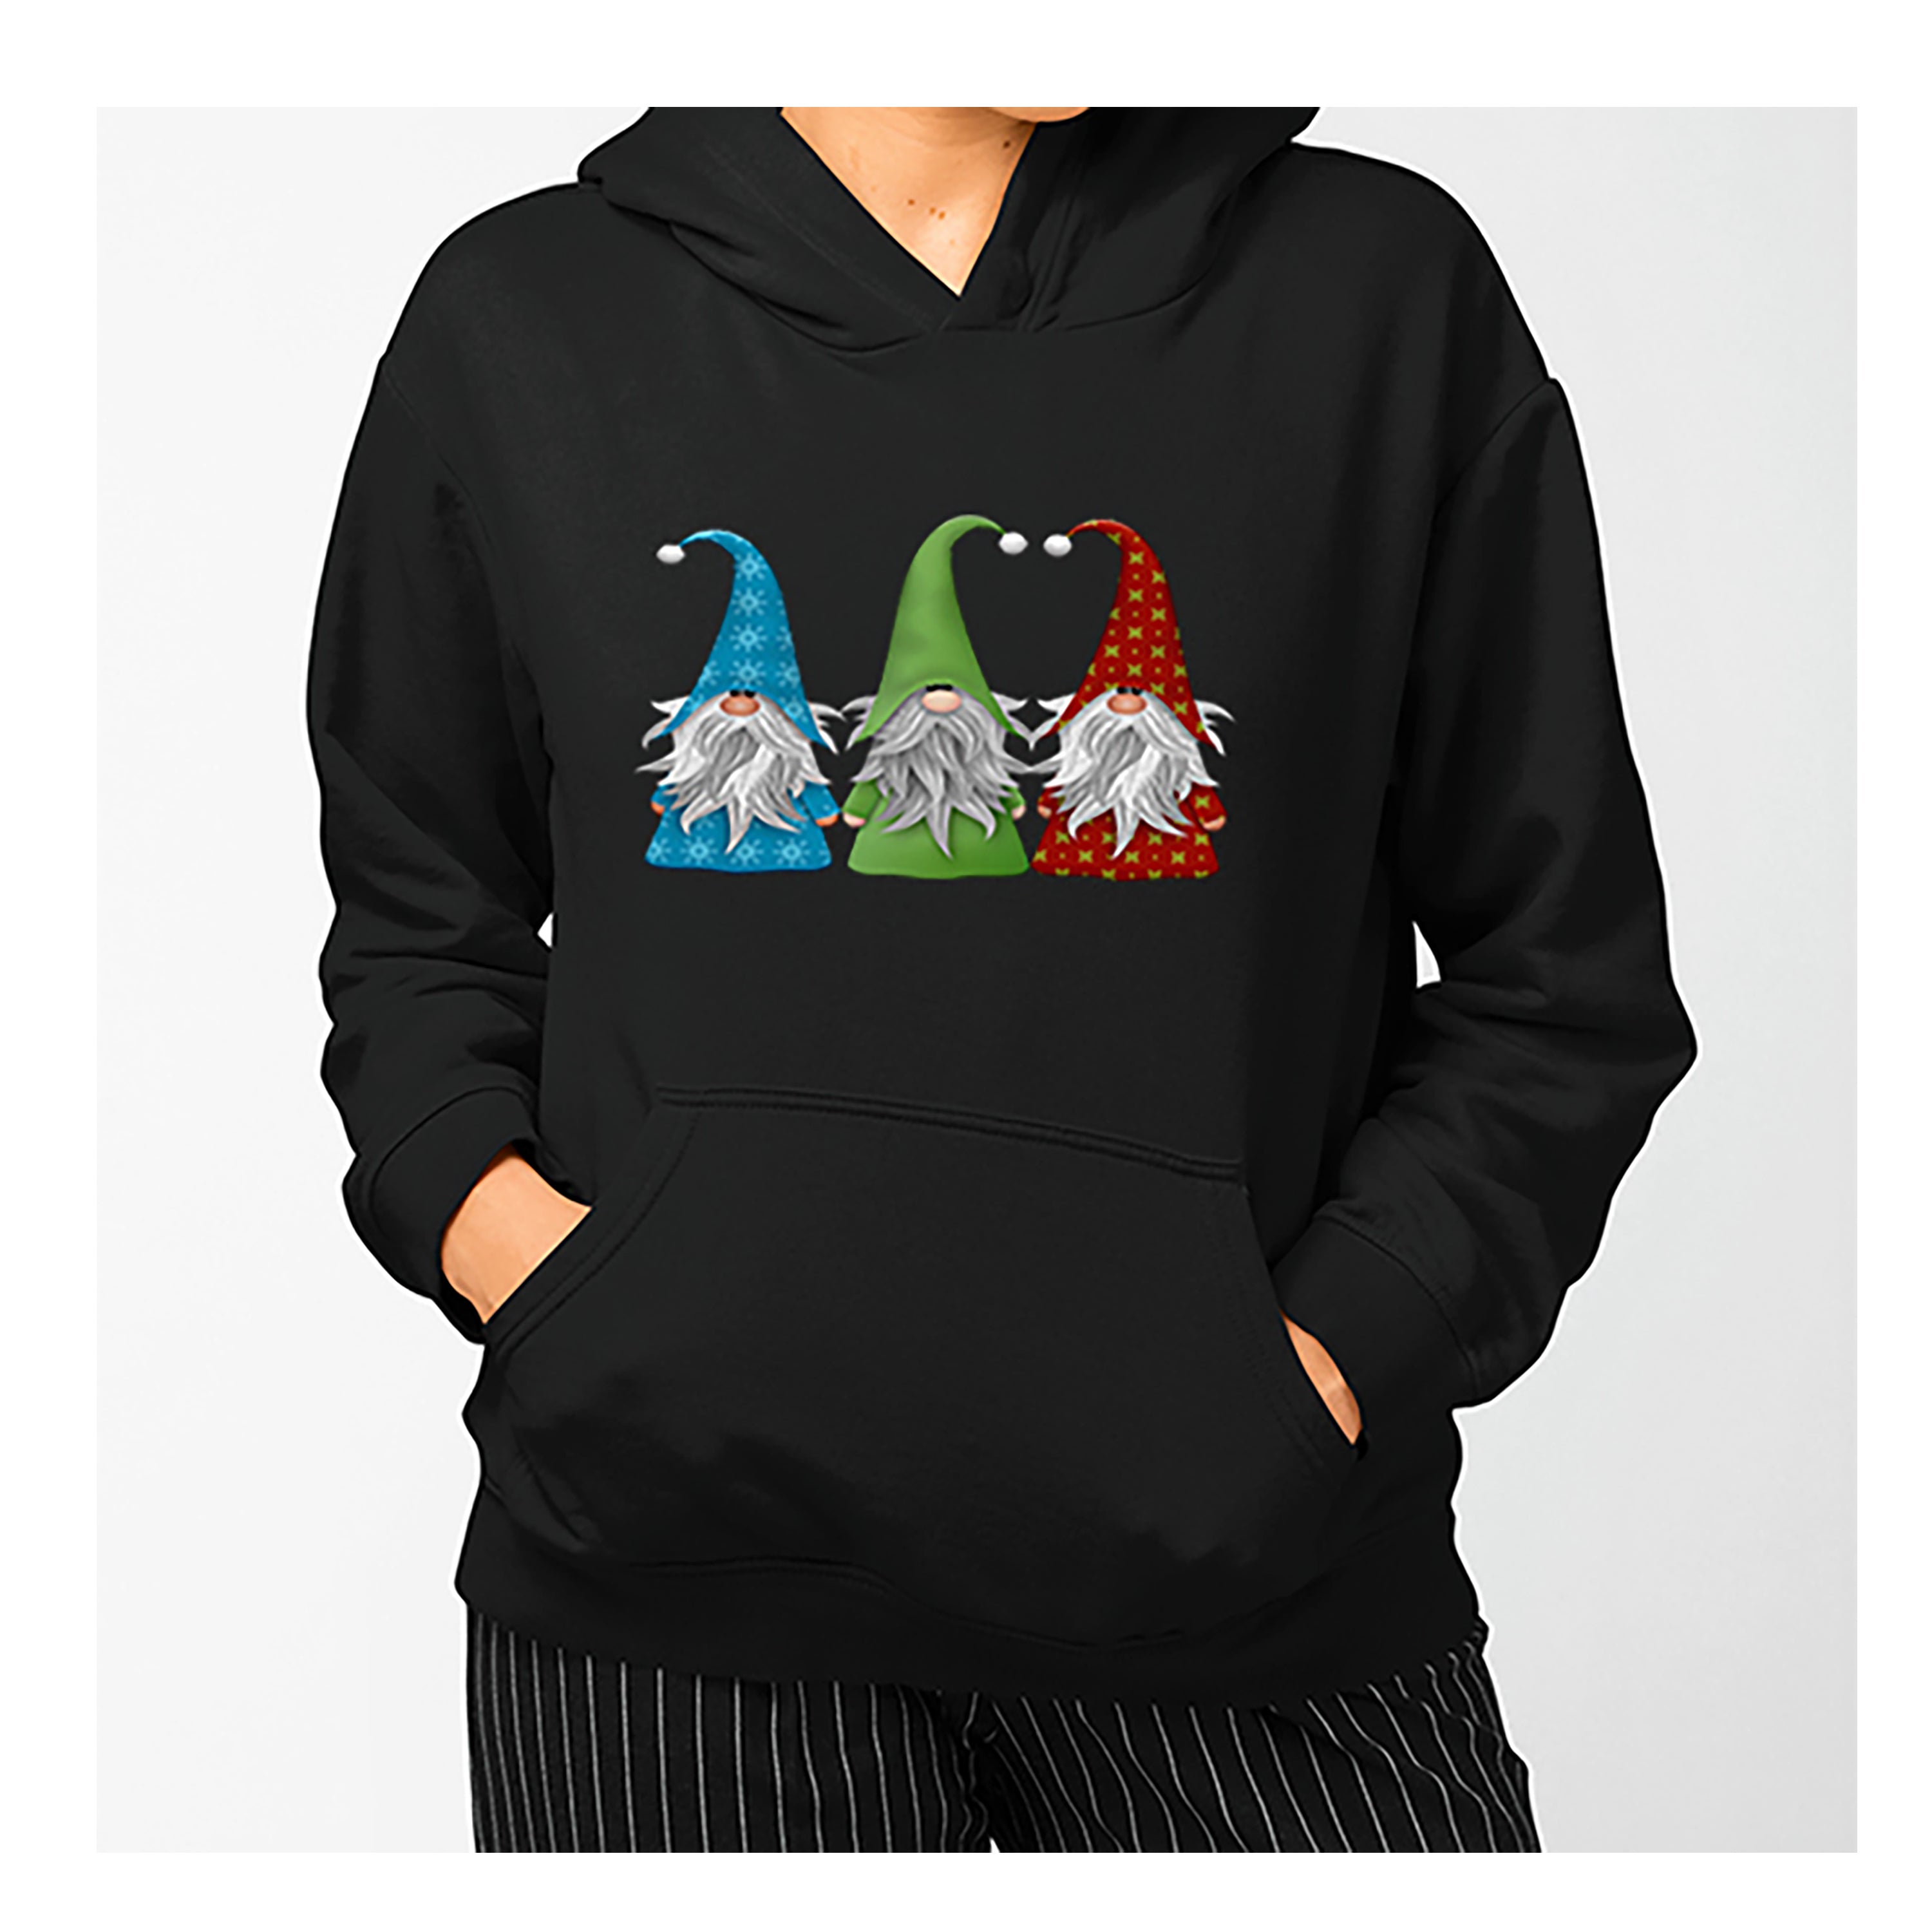 "Christmas Gnomies"-Hoodie and Sweatshirt